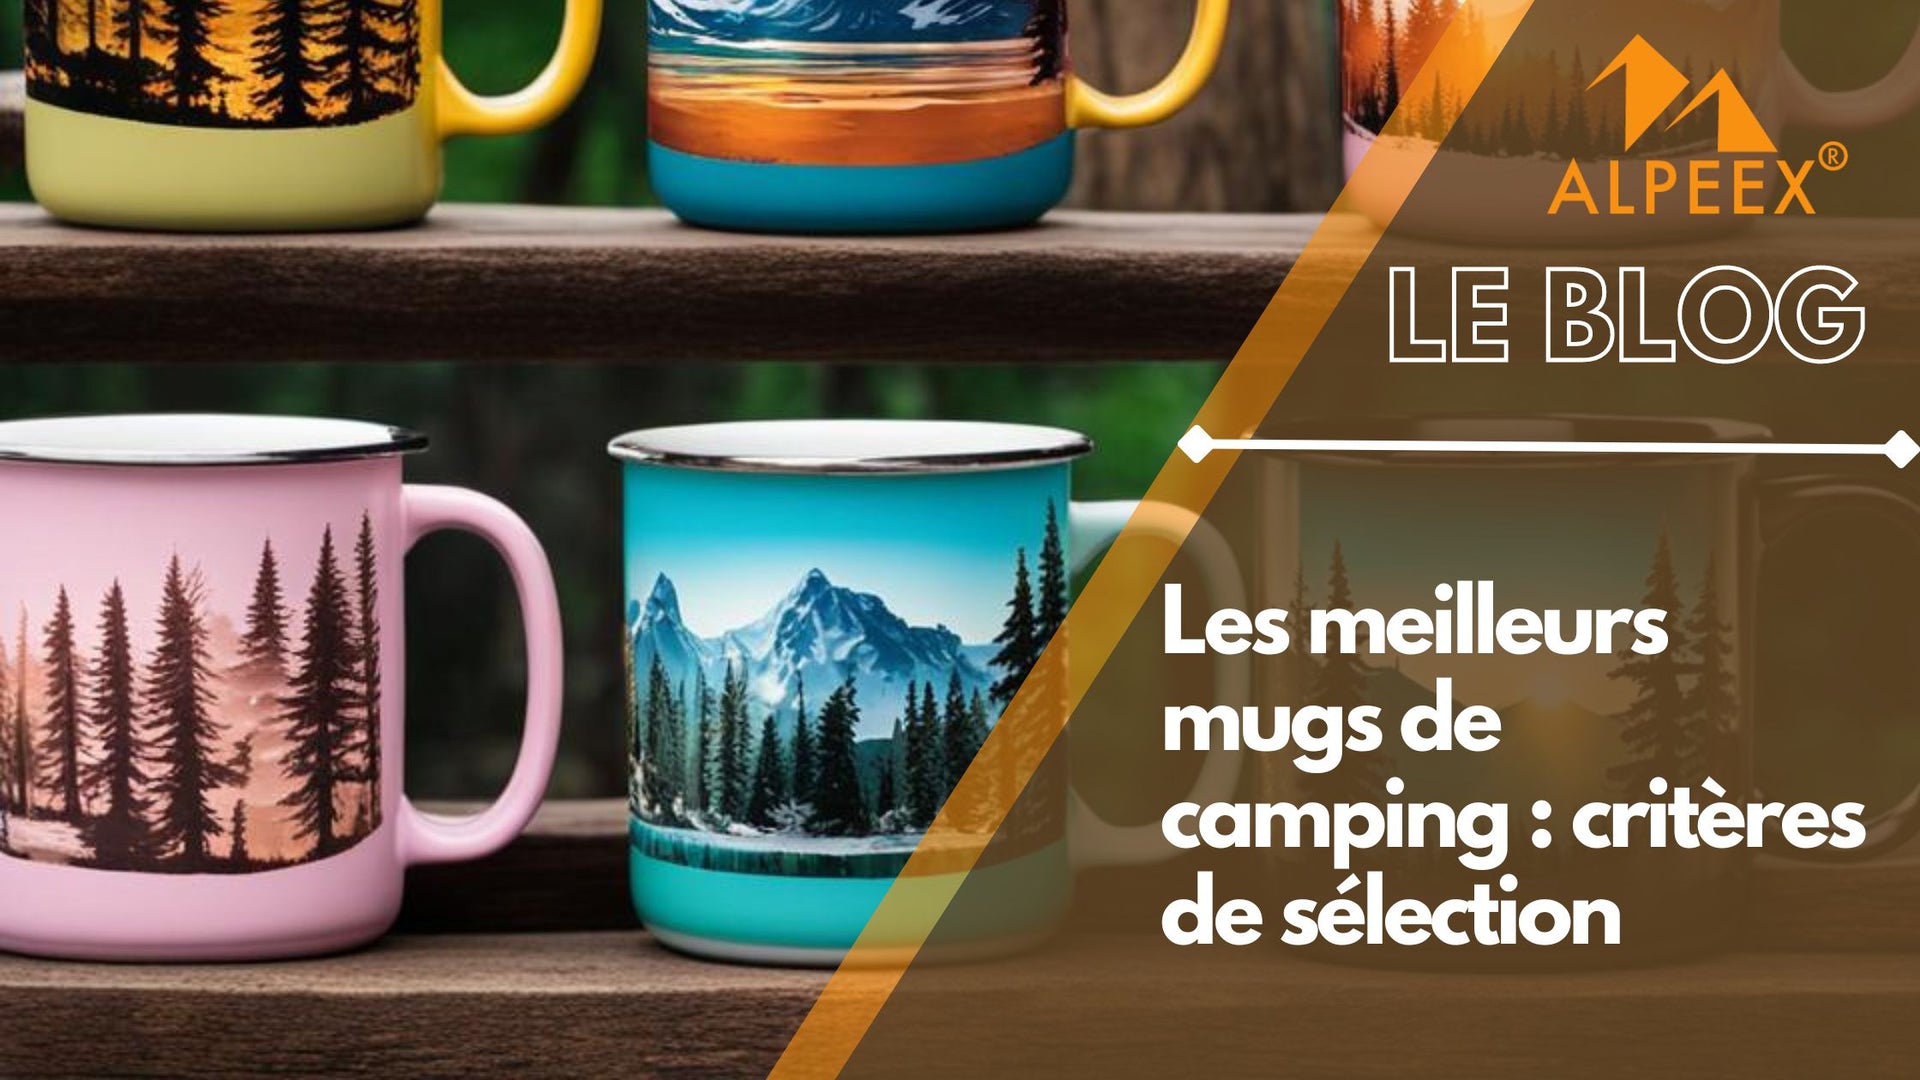 Plusieurs mugs colorés avec des dessins de montagne